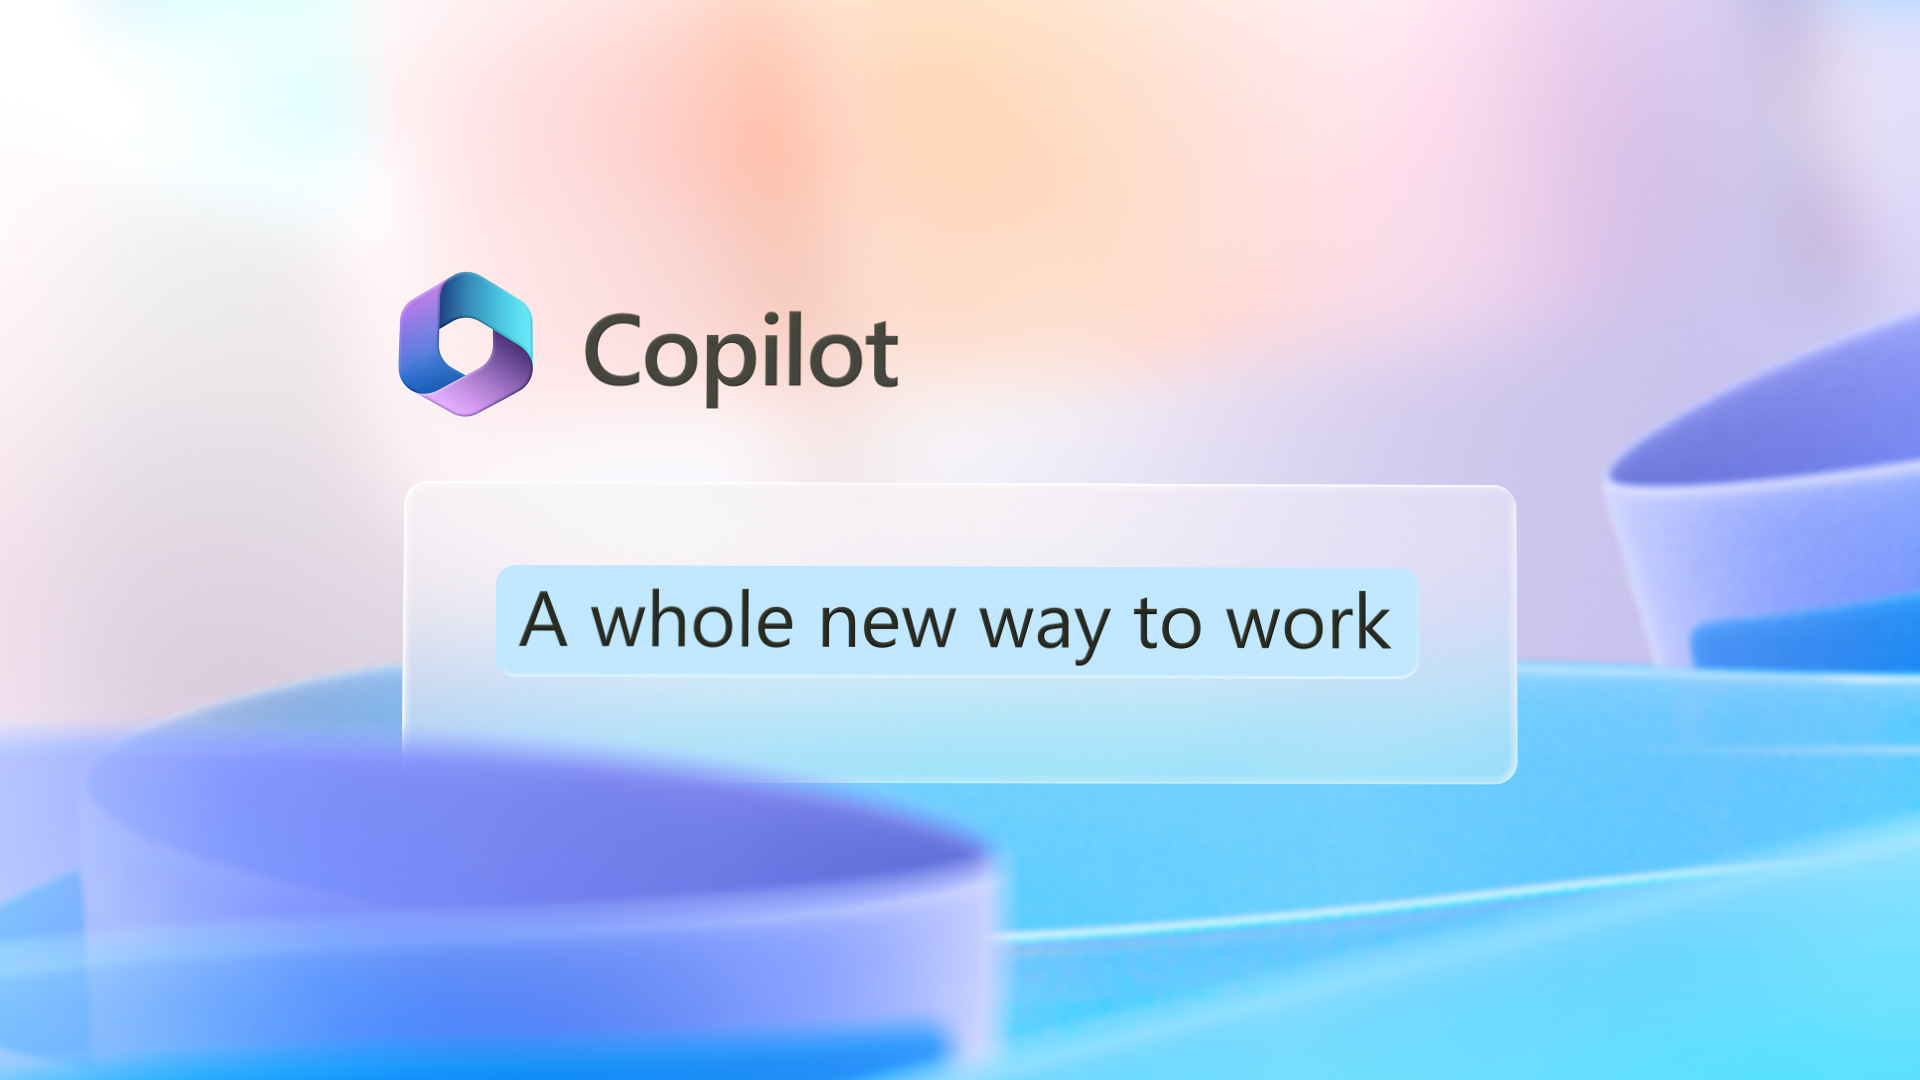 Billede af grafik har Copilot-logo med ordene En helt ny måde at arbejde på.